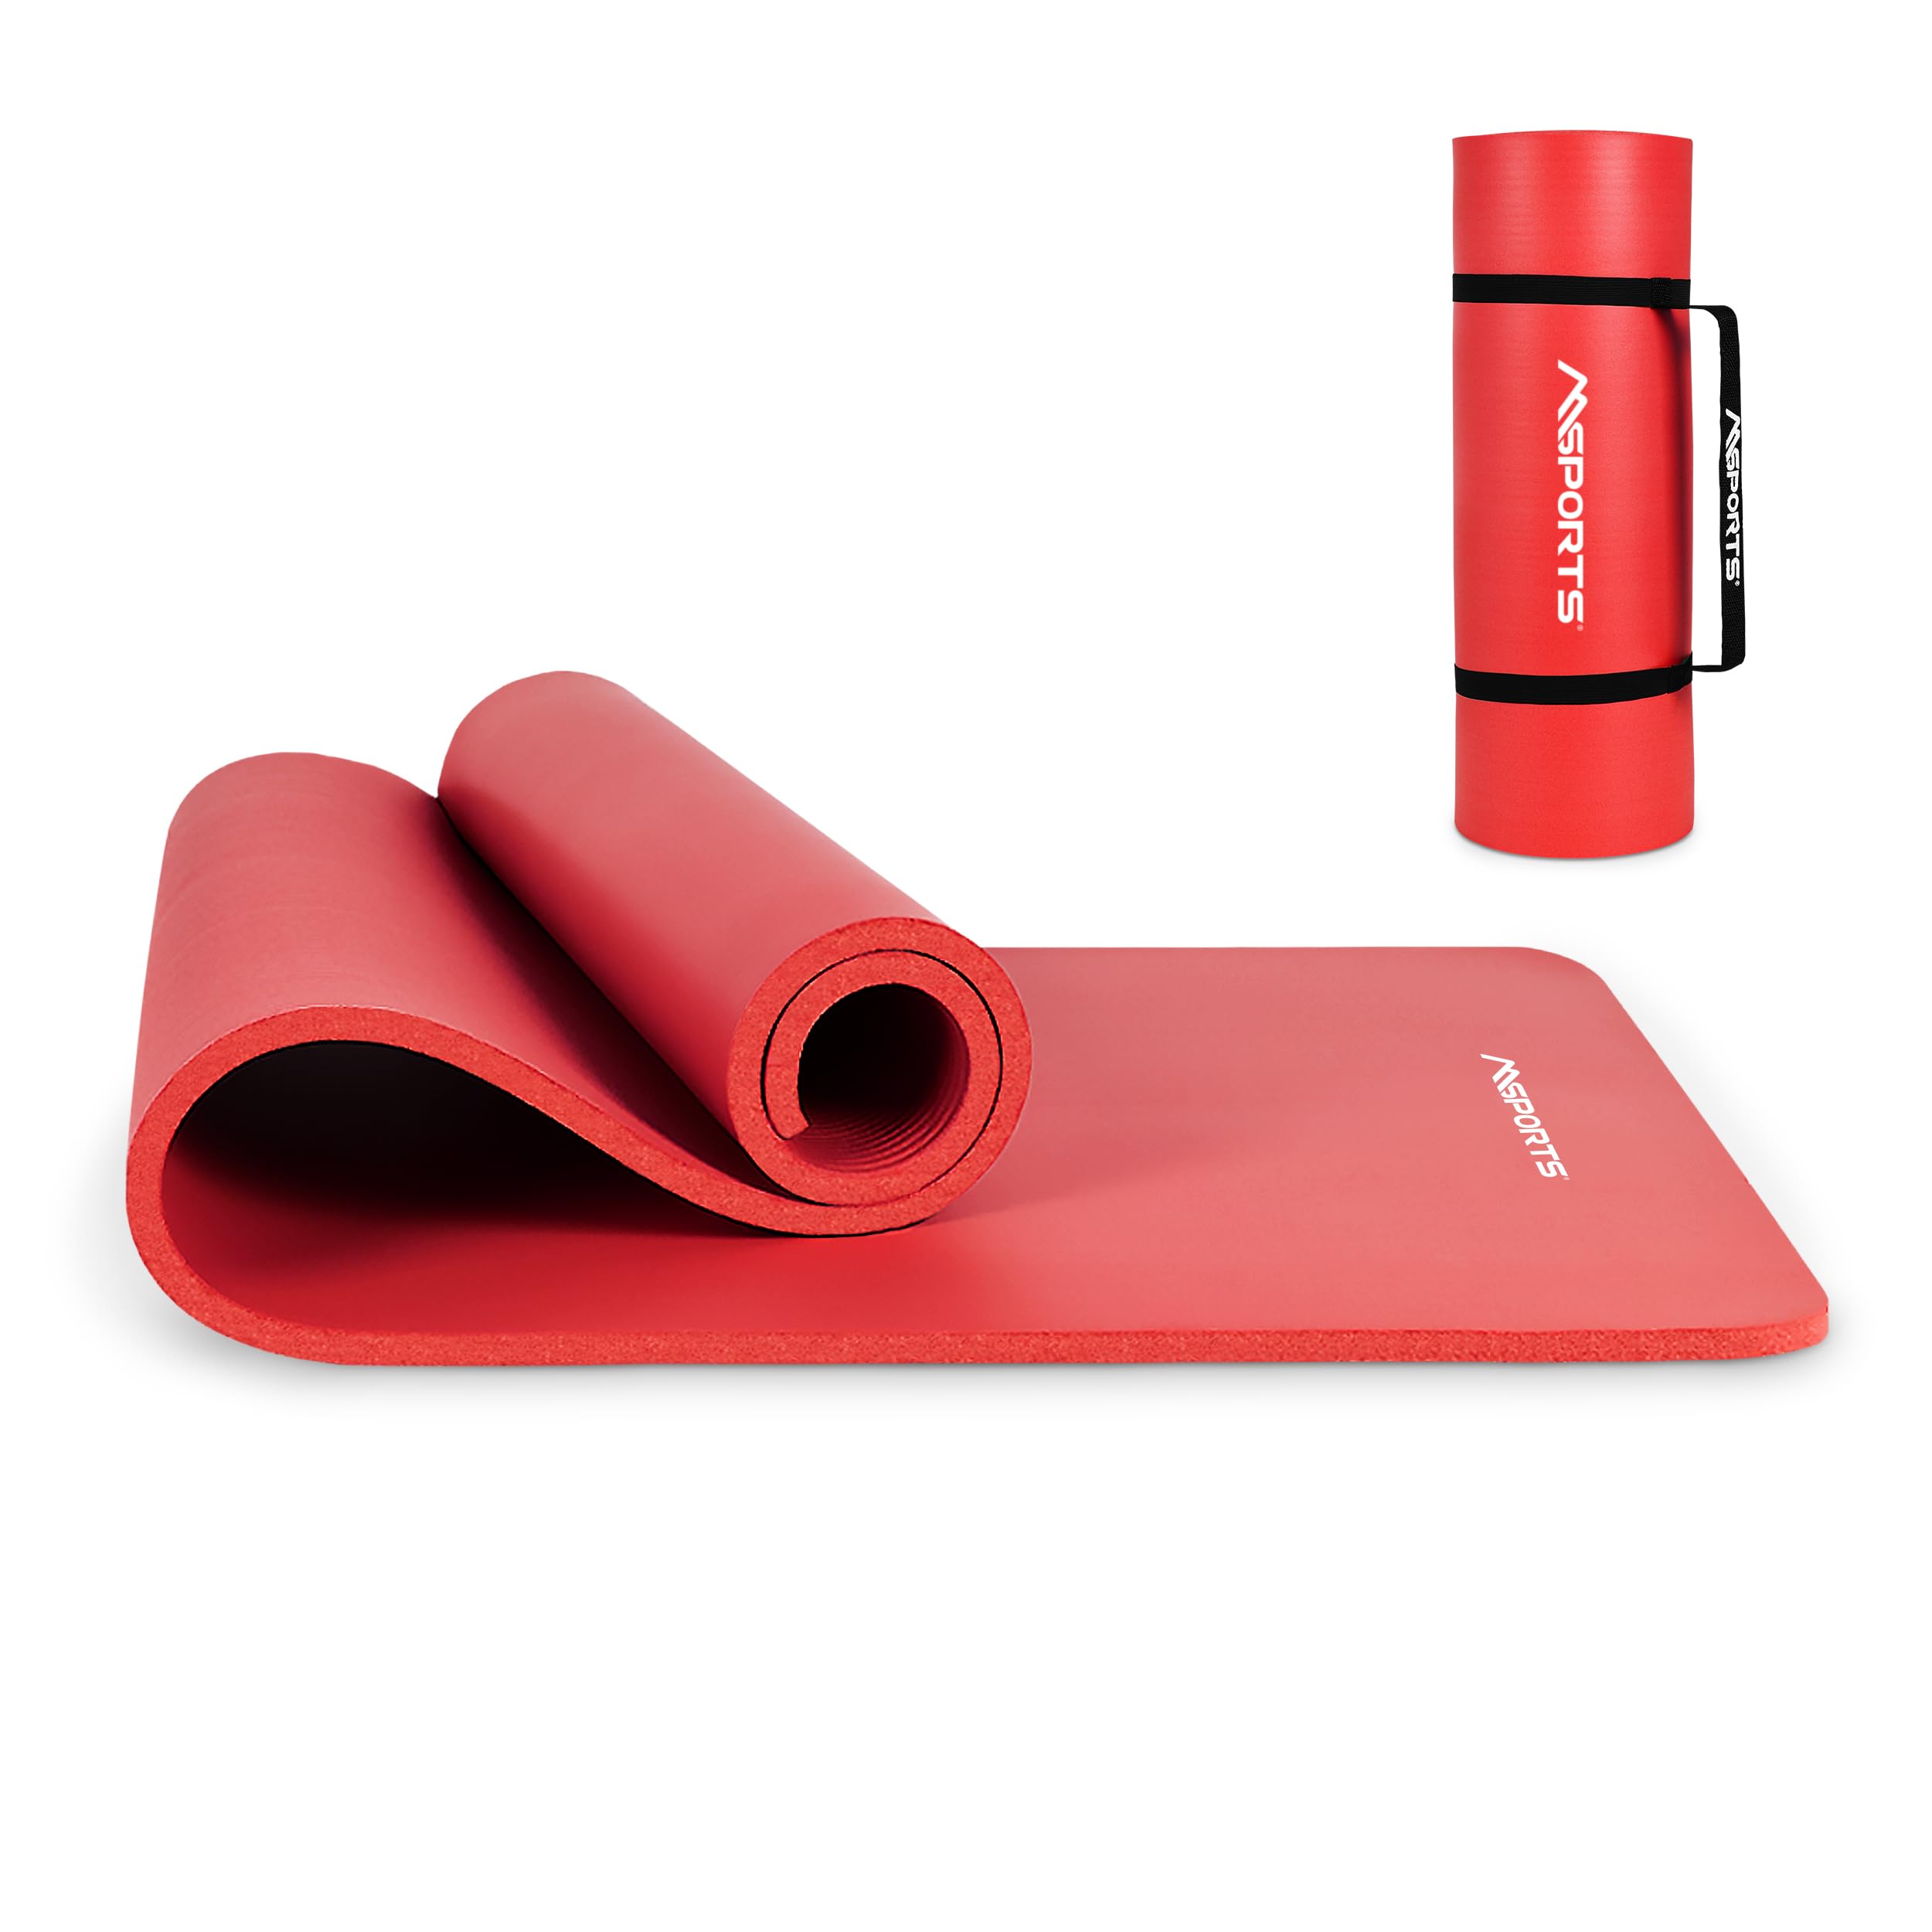 MSPORTS Gymnastikmatte Premium inkl. Tragegurt + Übungsposter + Workout App I Hautfreundliche Fitnessmatte 190 x 100 x 1,5 cm - Rubinrot - Phthalatfreie Yogamatte